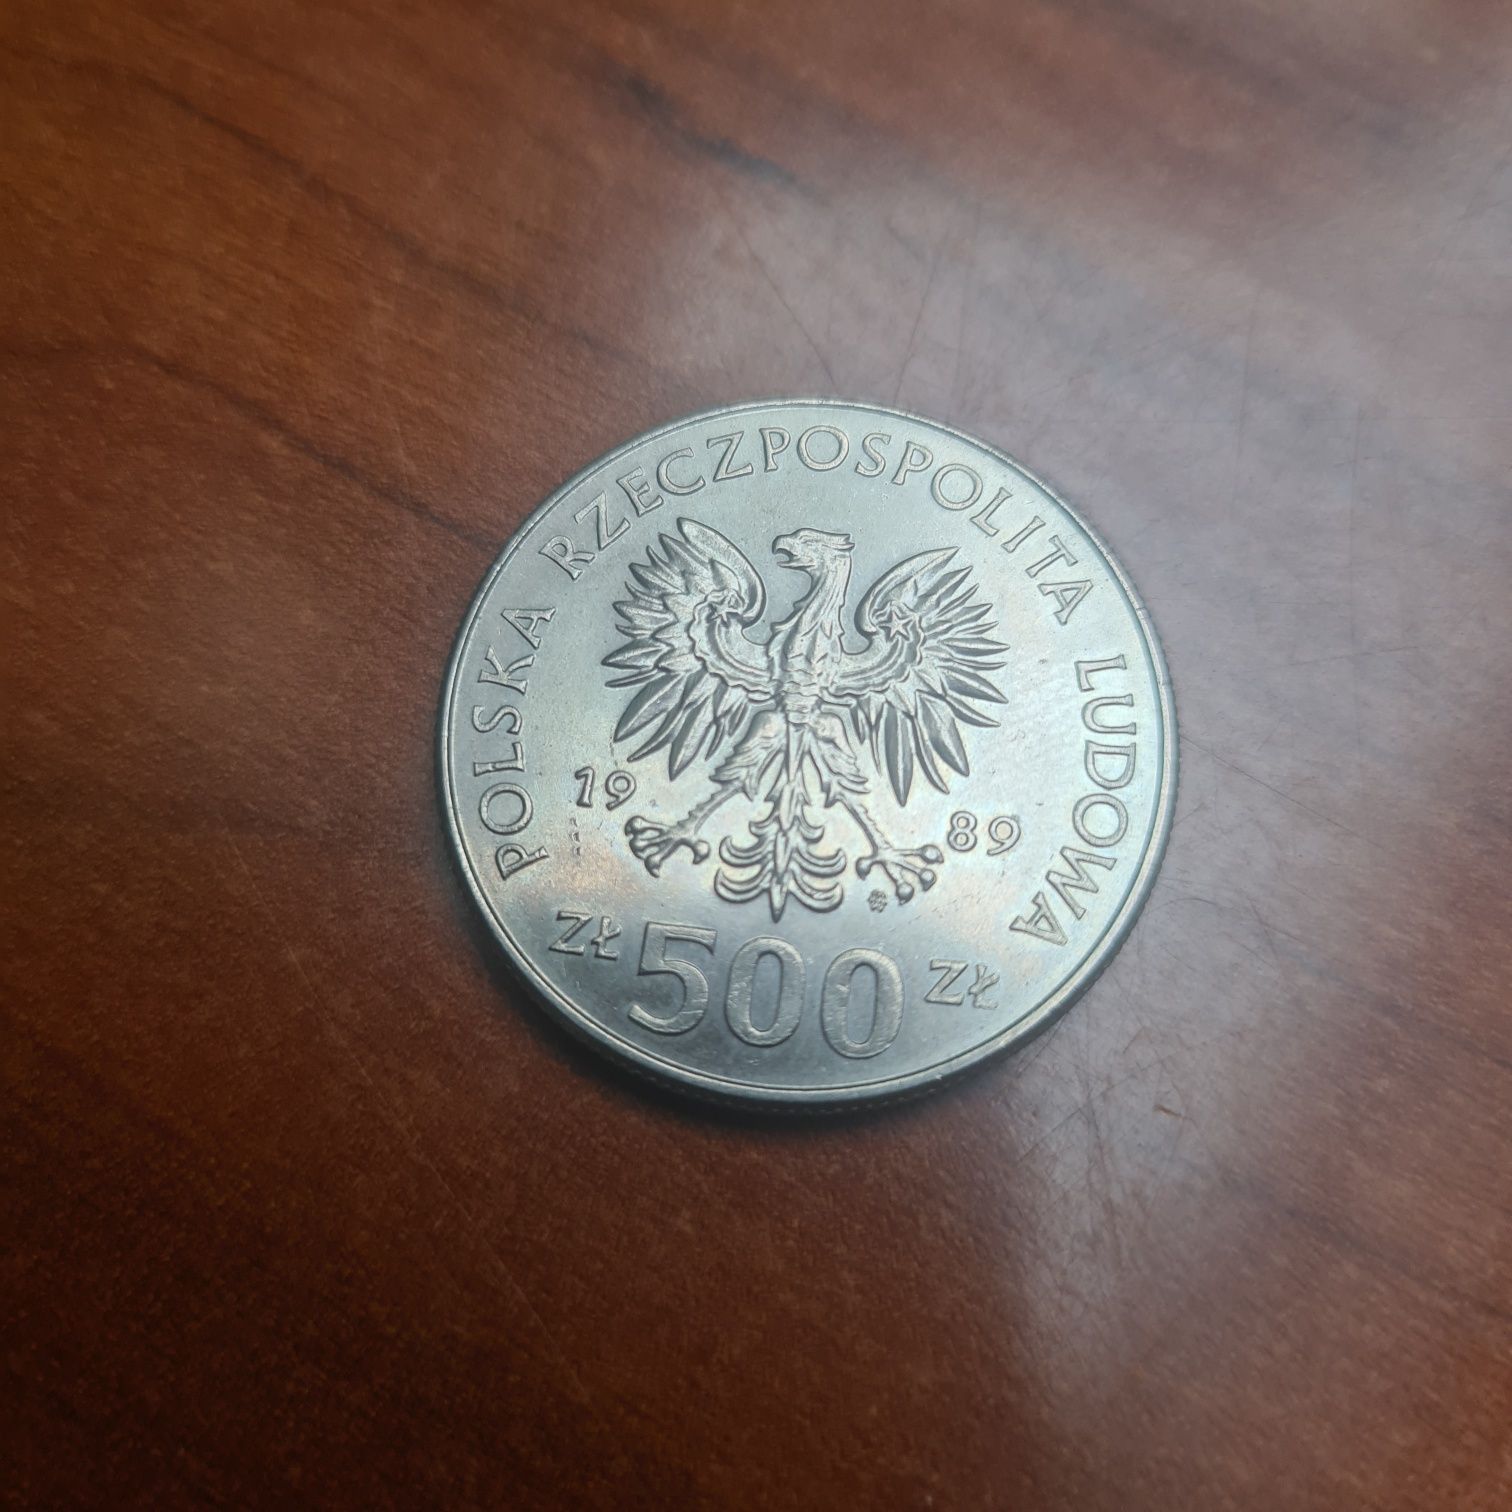 Moneta obiegowa 500 zł z 1989 r z przed denominacji